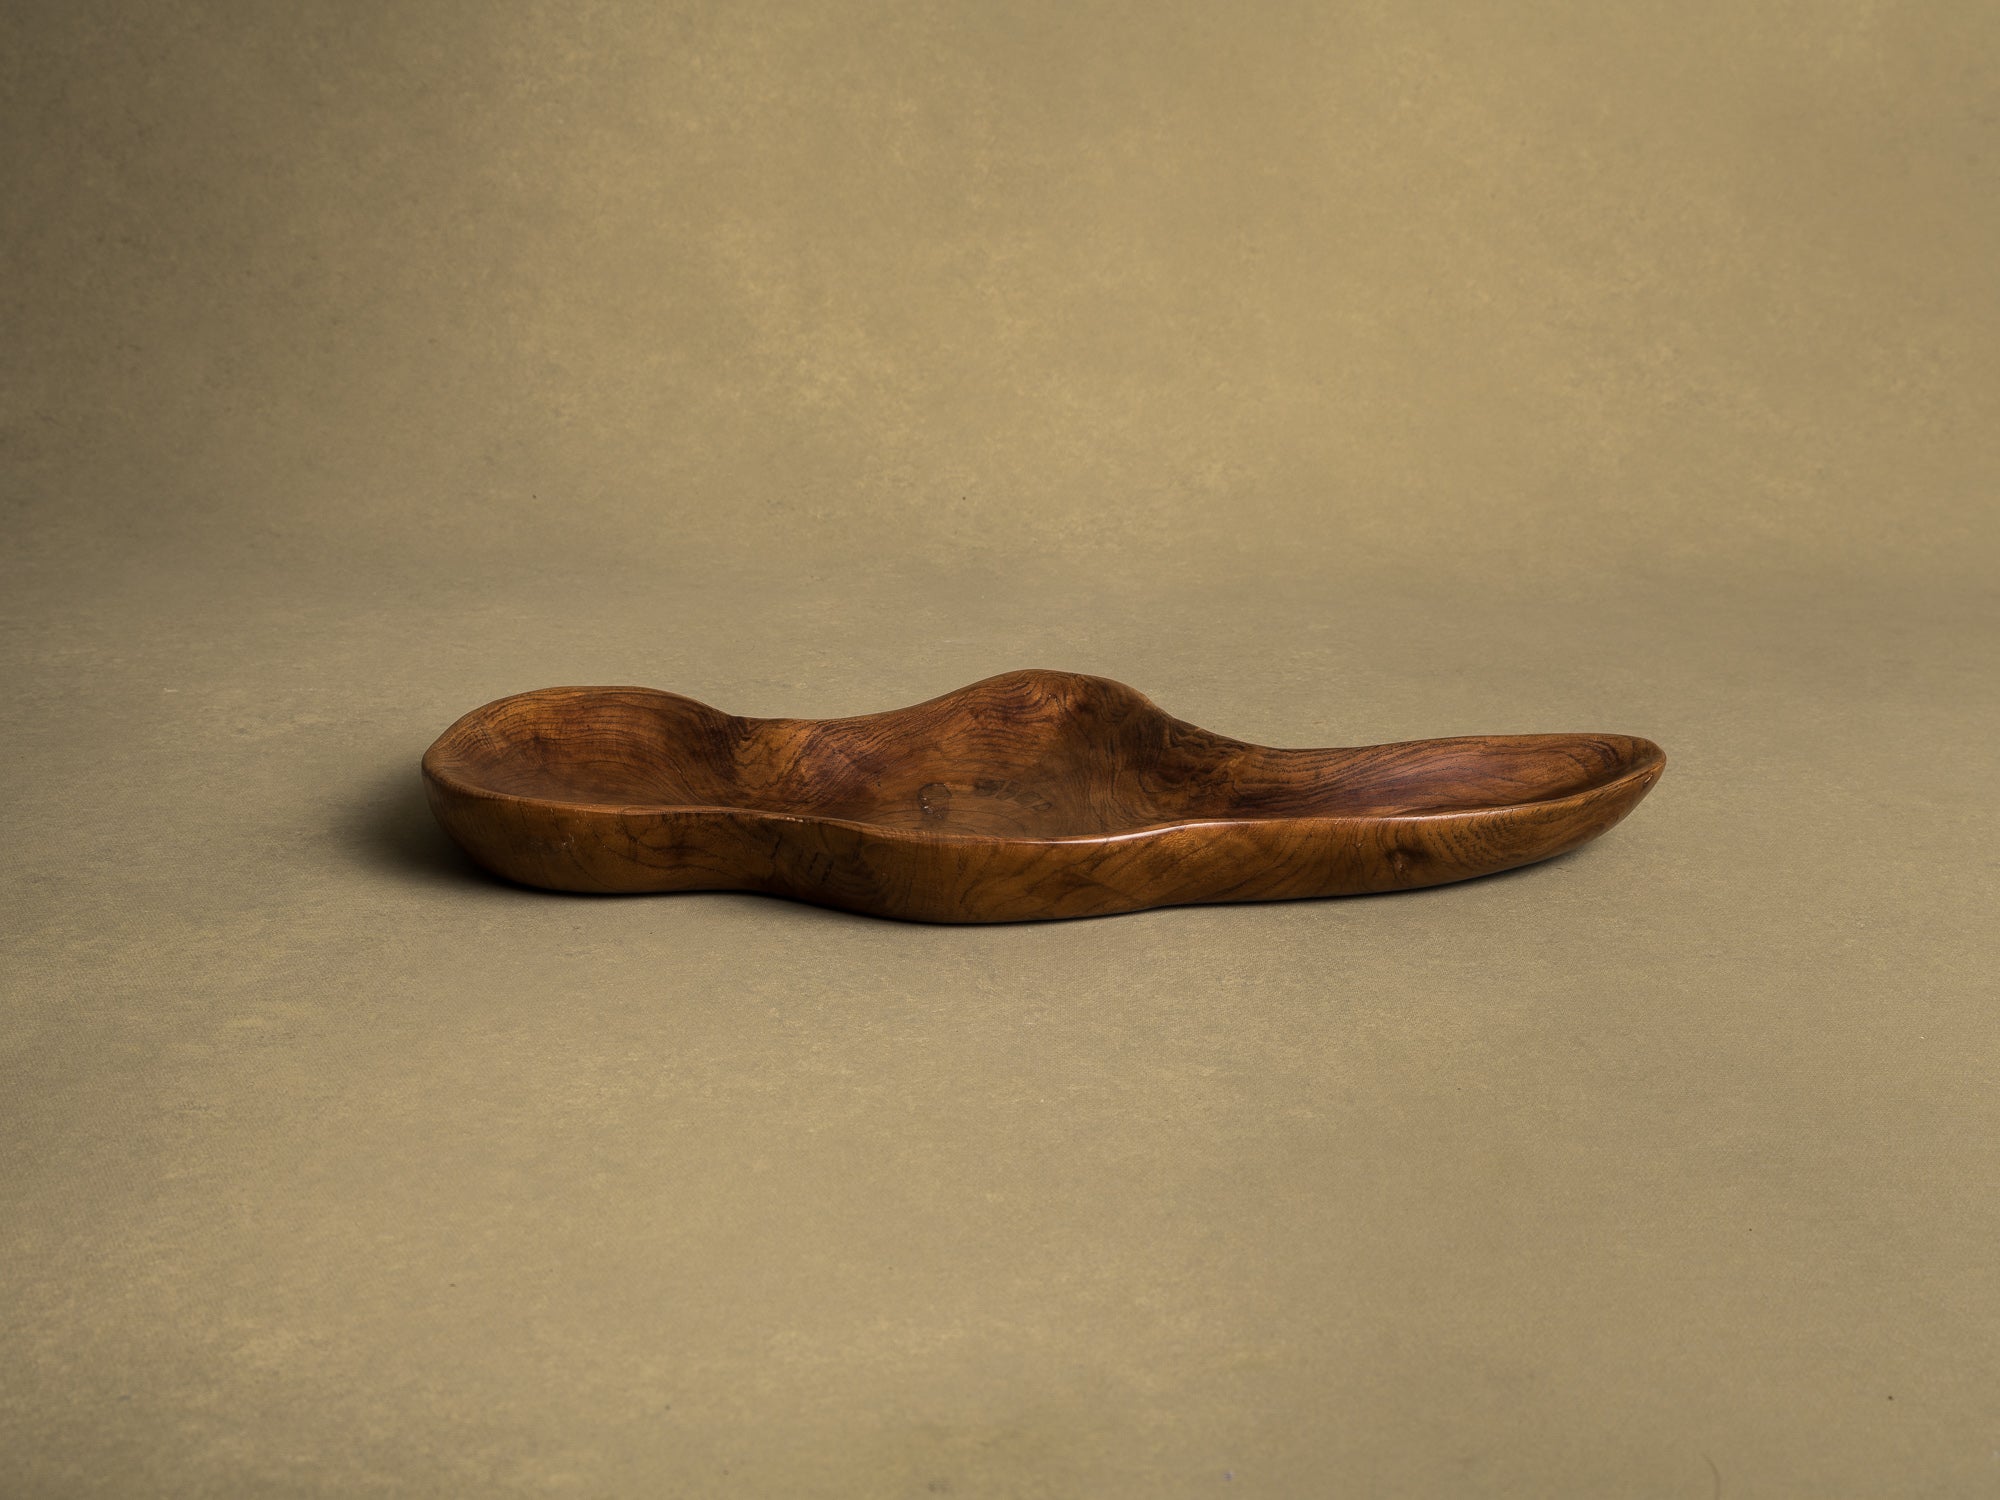 Coupe monoxyle de forme libre en bois exotique, France (vers 1950)..Free form biomorphic wooden bowl, France (circa 1950)